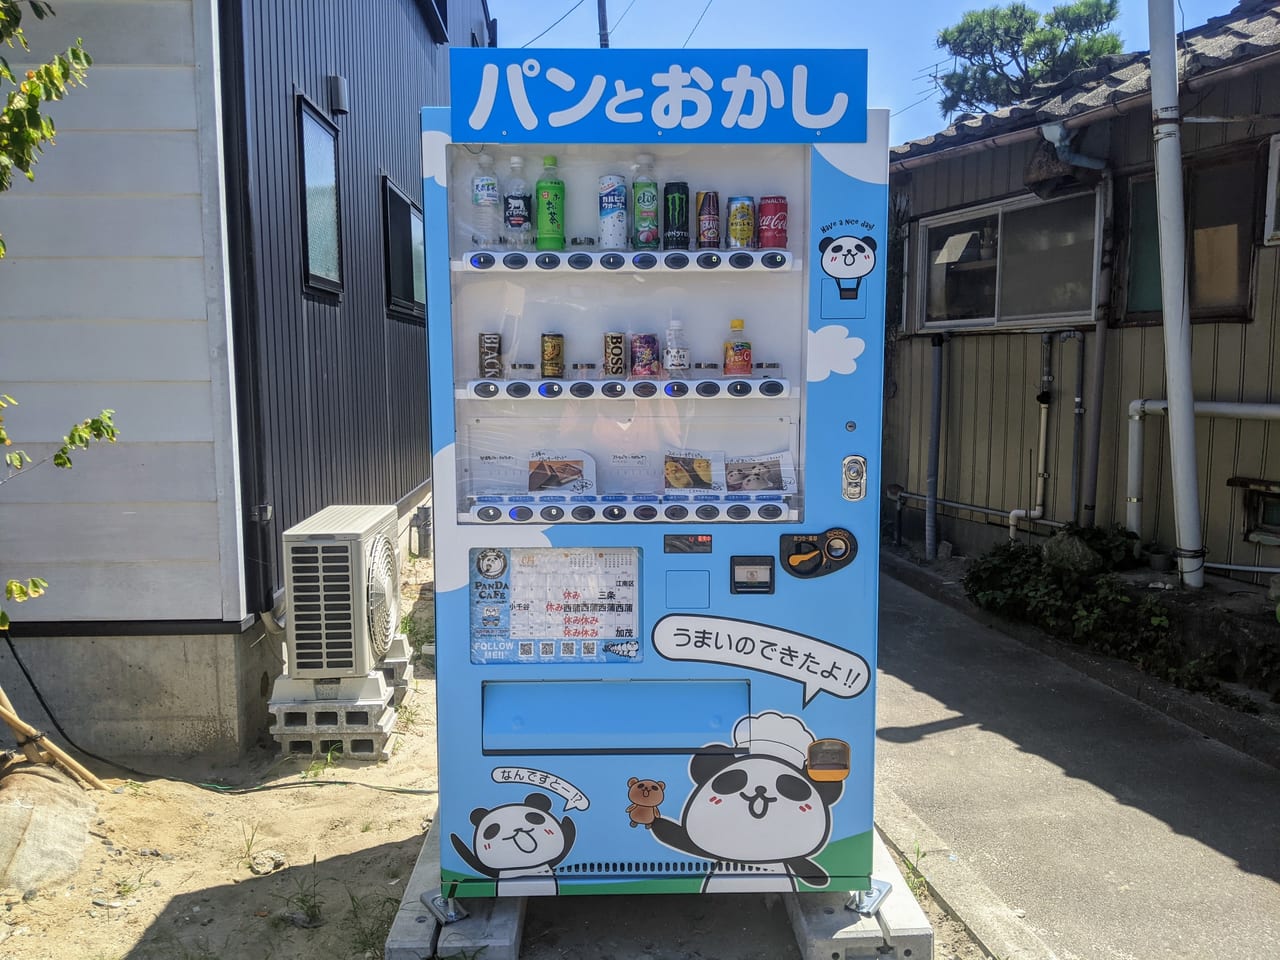 新潟市北区 松浜本町で世界に一つだけ の自動販売機を発見 そこで買ったものとは 号外net 新潟市北区 東区